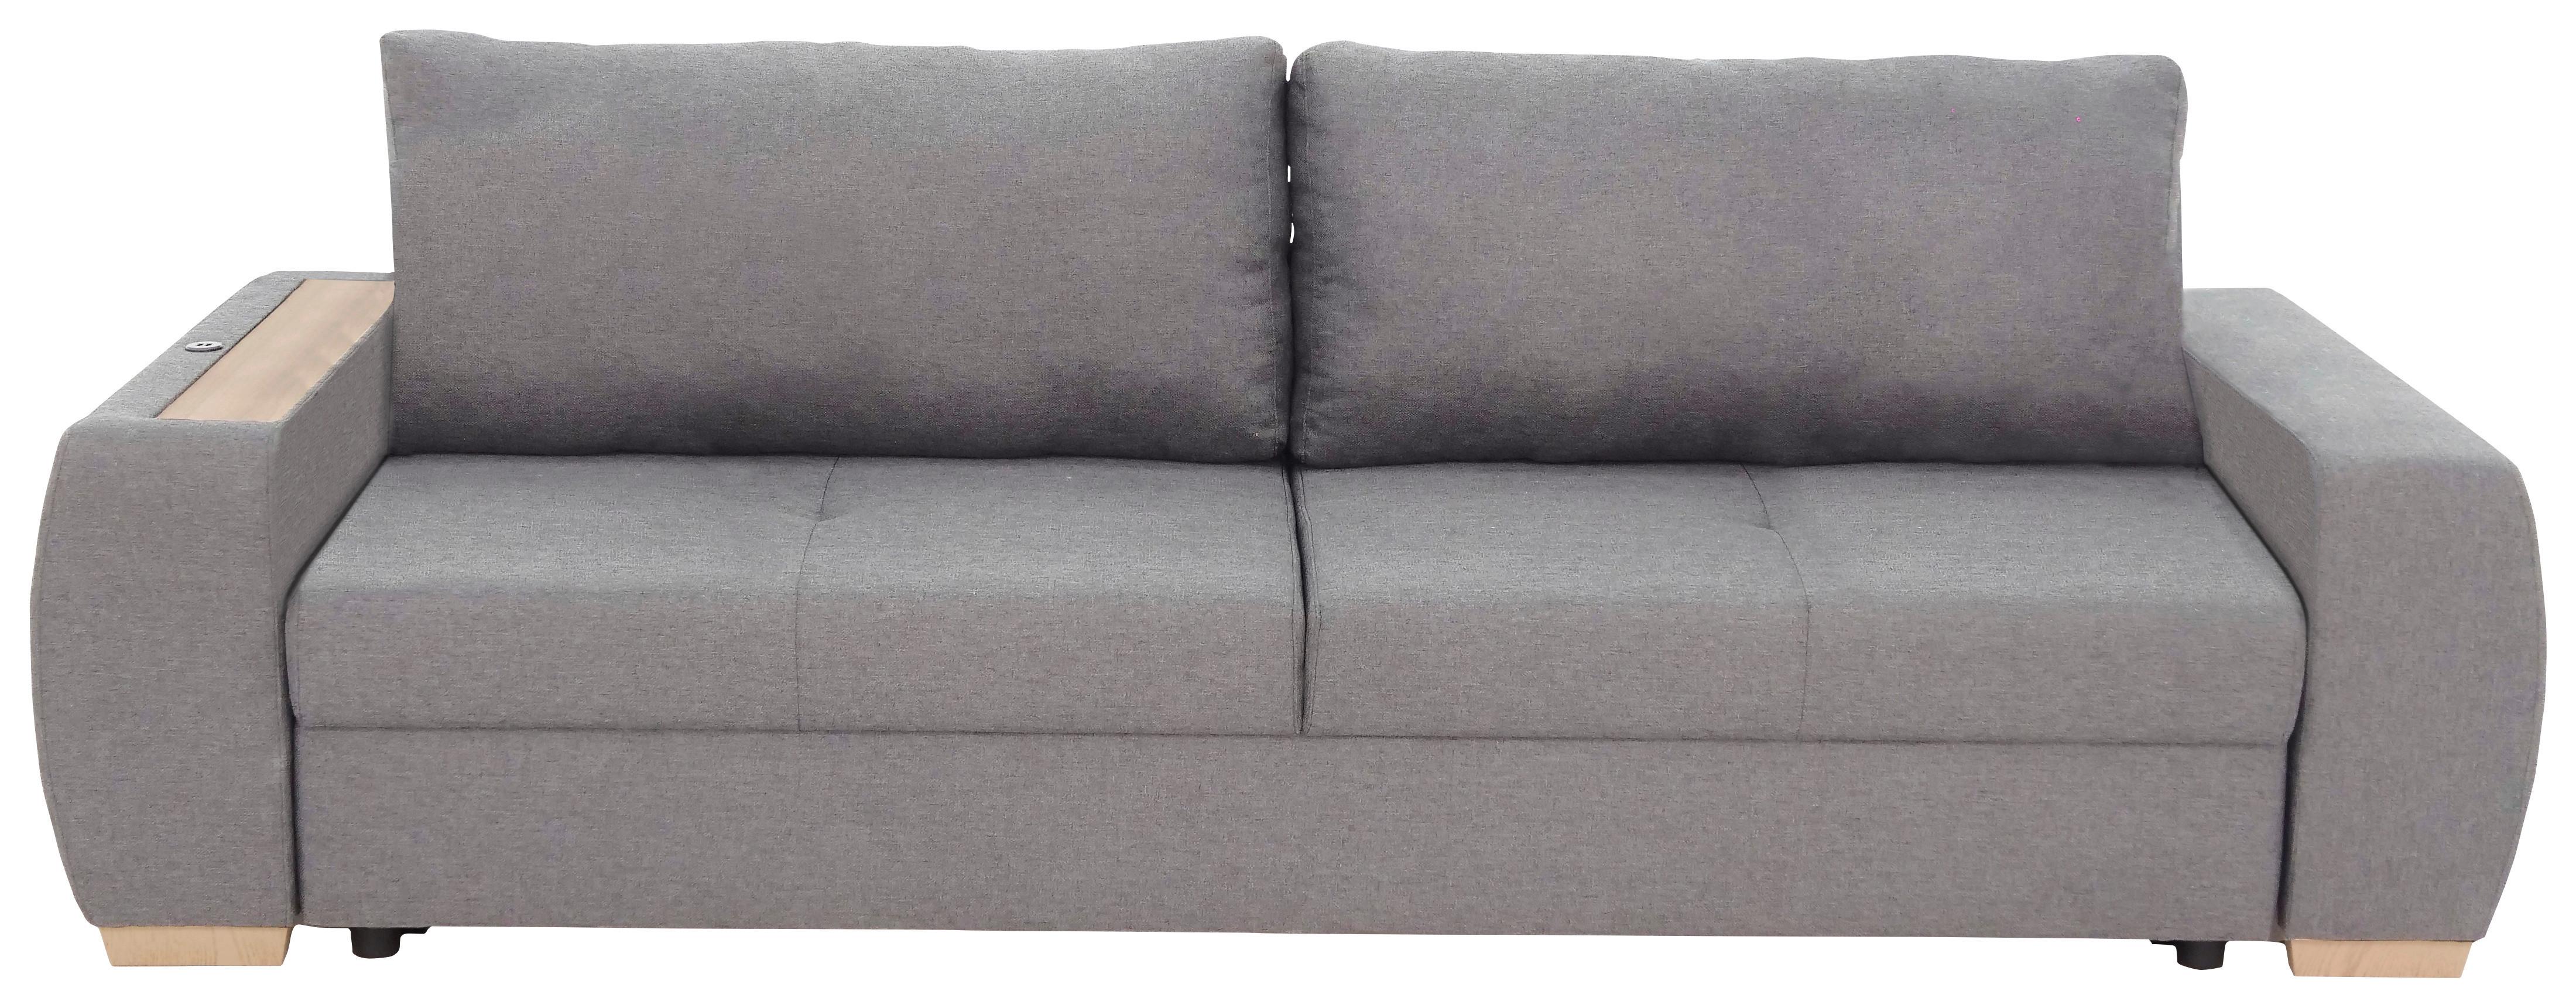 3-Sitzer-Sofa Mit Schlaffunktion Bongo Hellgrau - Hellgrau, Basics, Textil (238/85/88cm) - P & B